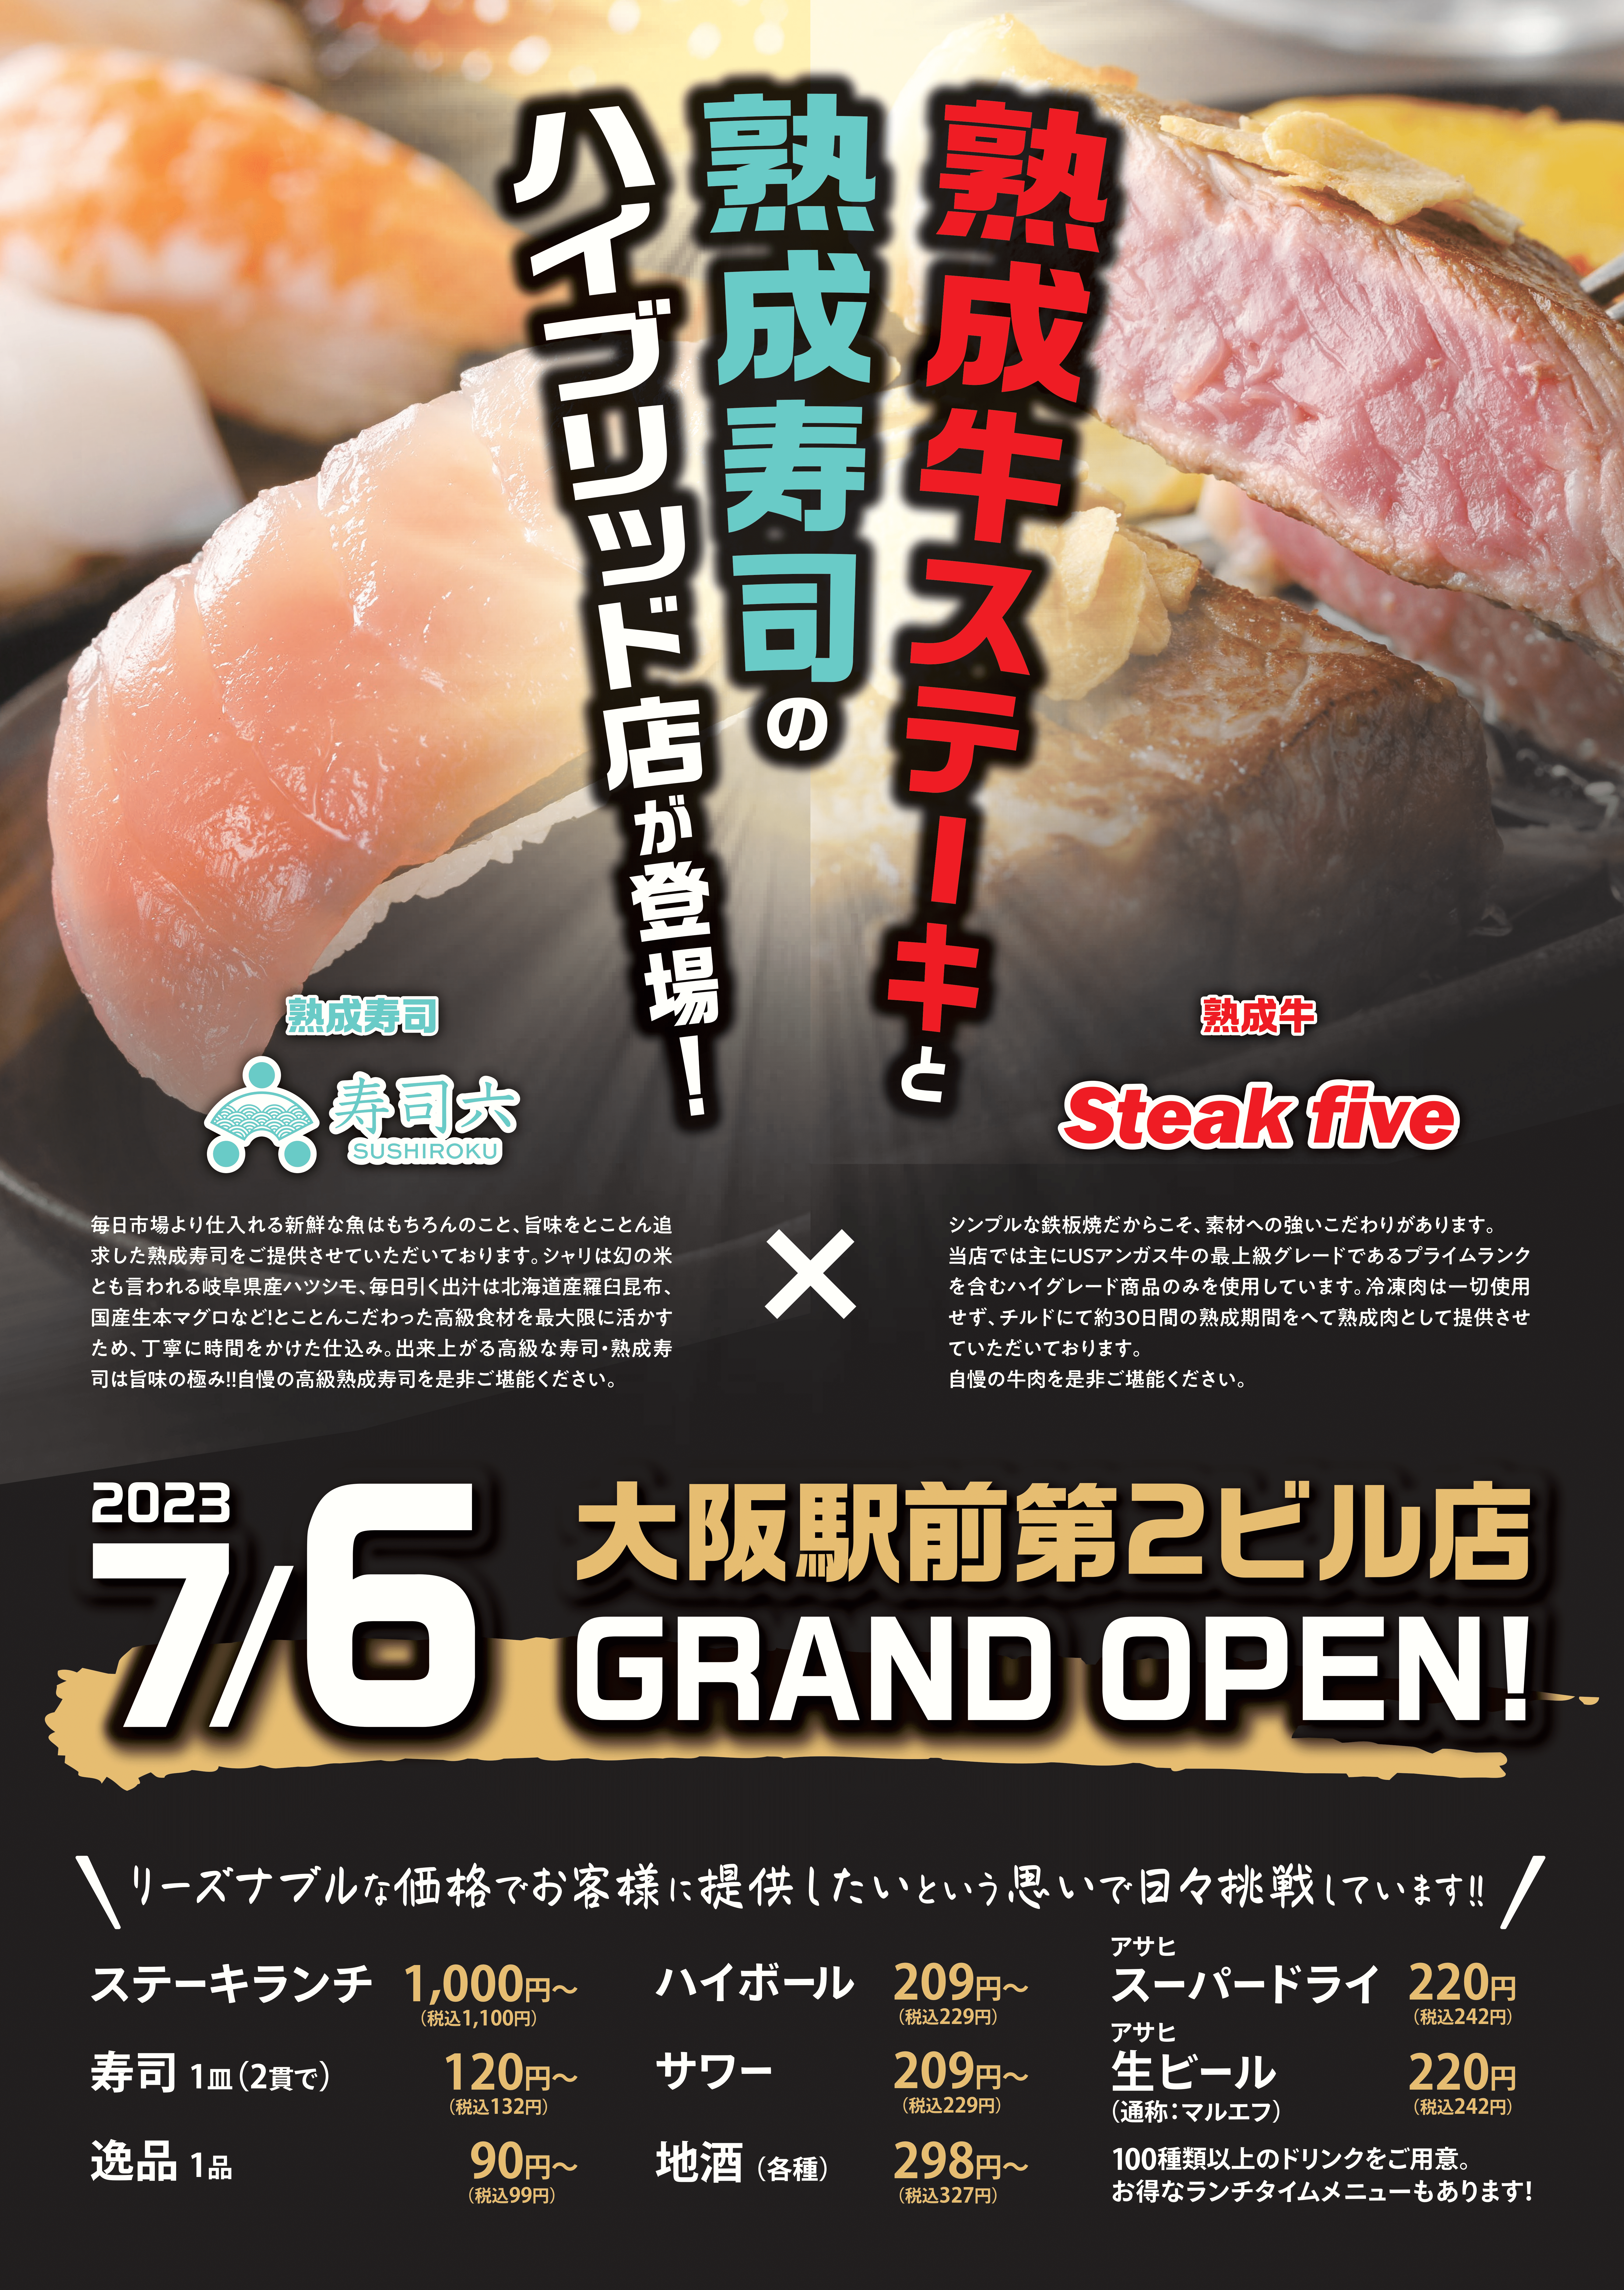 大阪で飲食店のメニュー・販促物の制作は「おいしいデザイン.com」 ステーキファイブと寿司六 新店舗告知ポスター